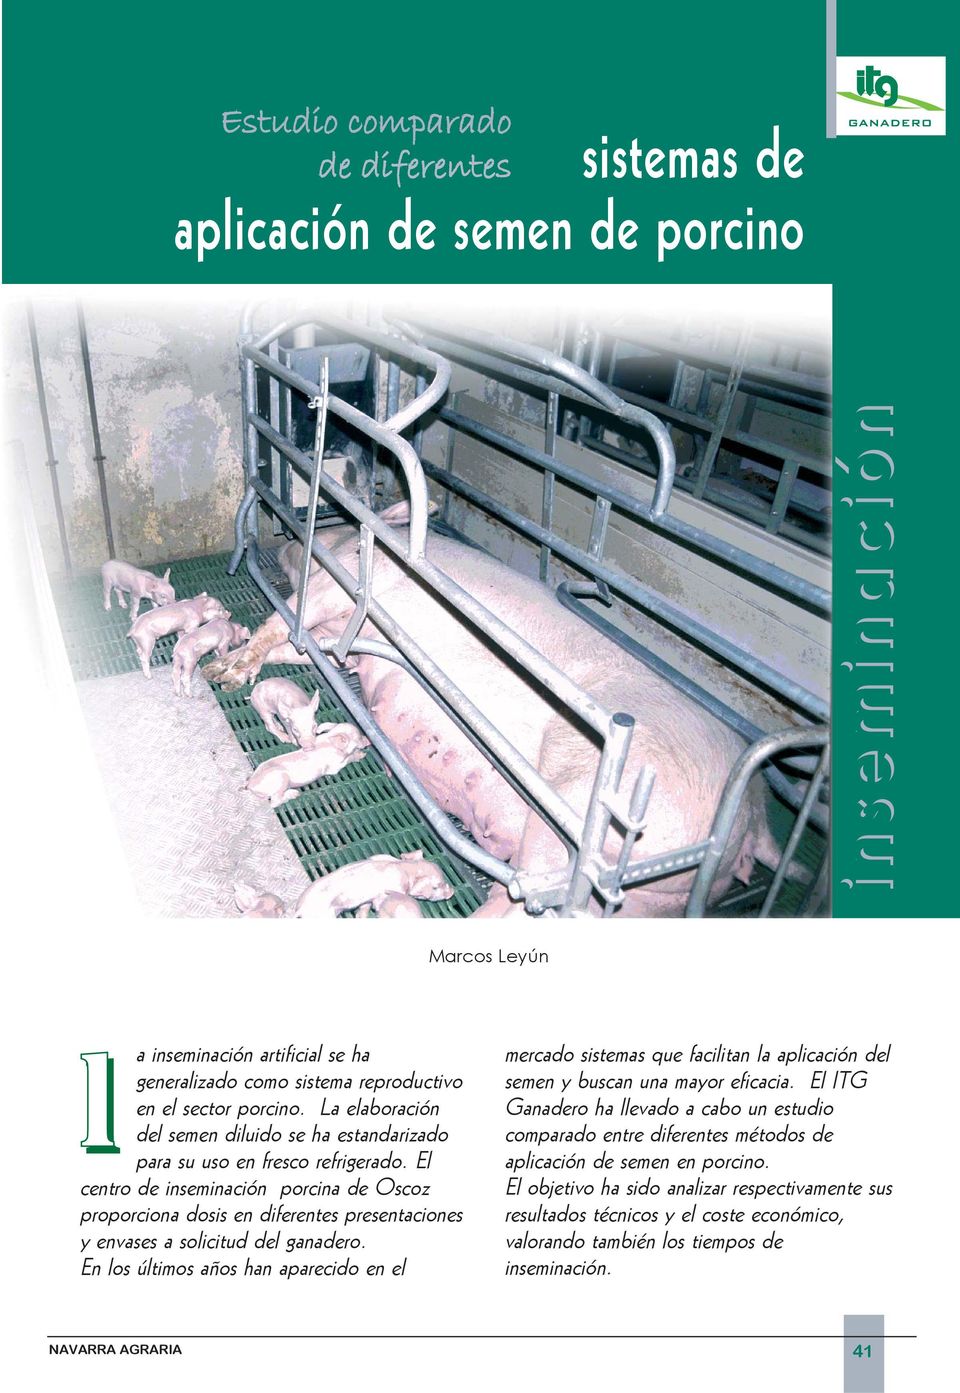 El centro de inseminación porcina de Oscoz proporciona dosis en diferentes presentaciones y envases a solicitud del ganadero.